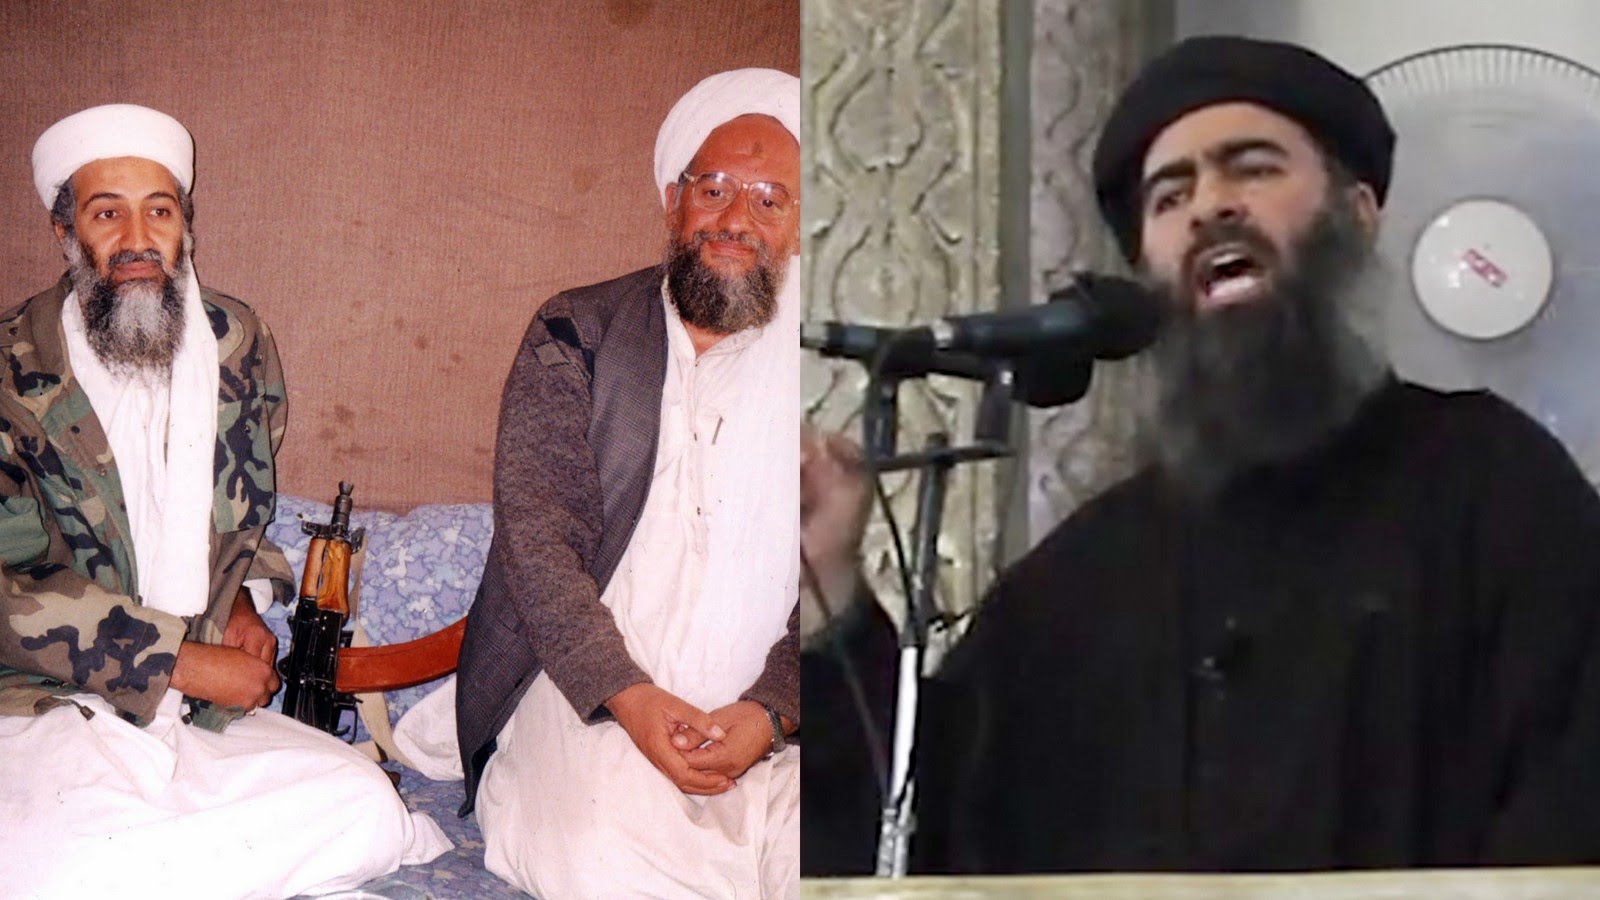 La guerra dentro del yihadismo: ISIS y Al Qaeda, frentes de batalla e implicaciones